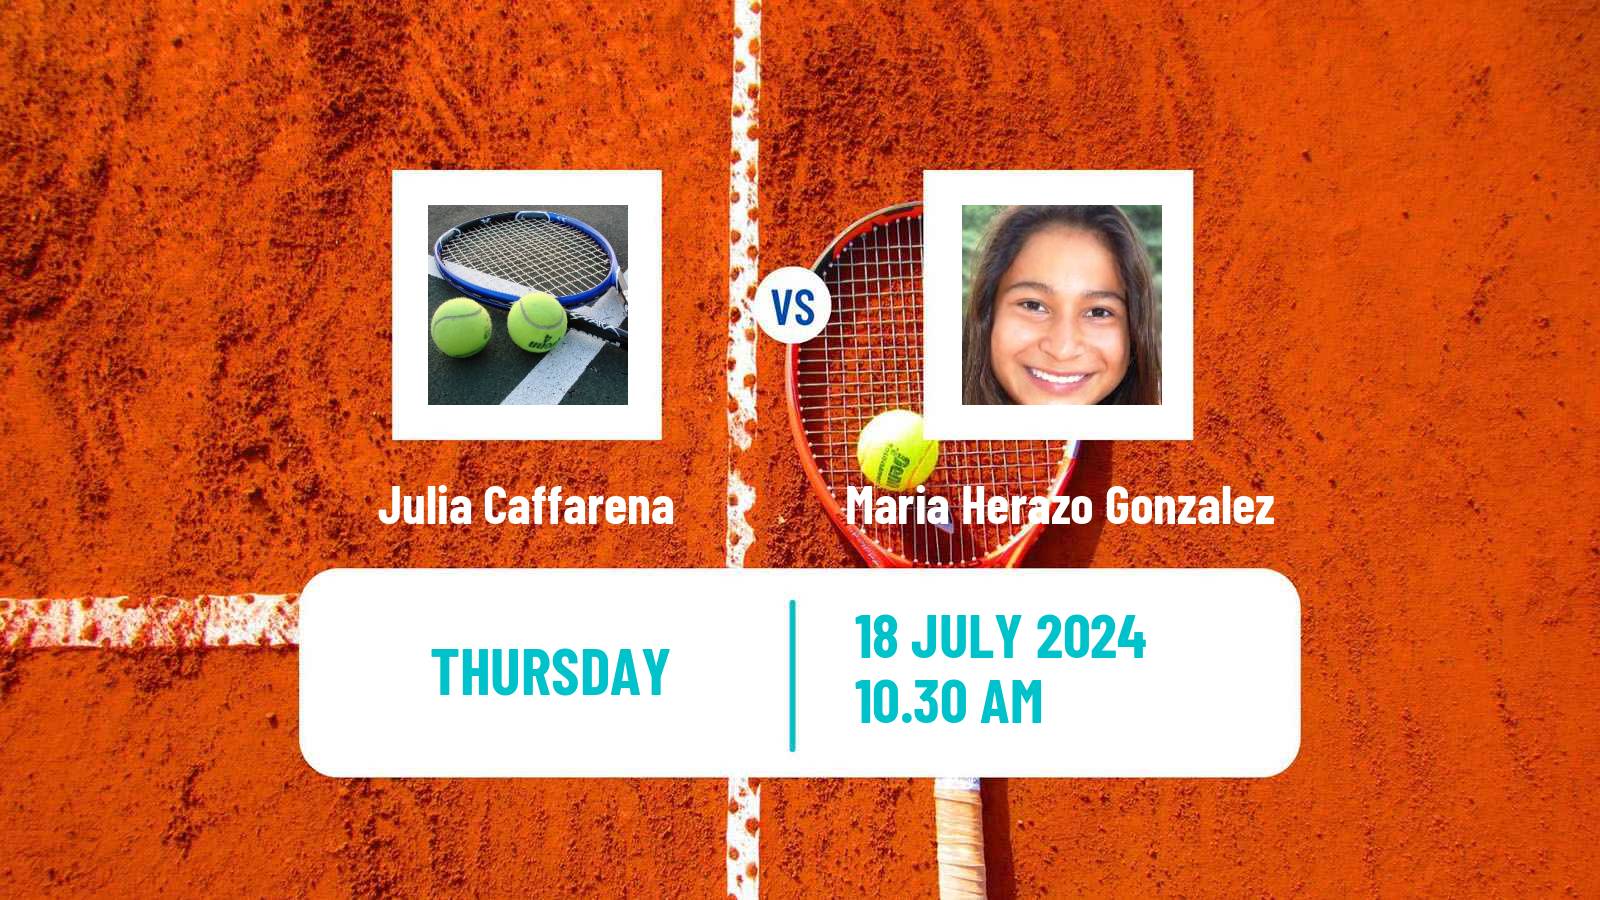 Tennis ITF W15 Lujan 2 Women Julia Caffarena - Maria Herazo Gonzalez